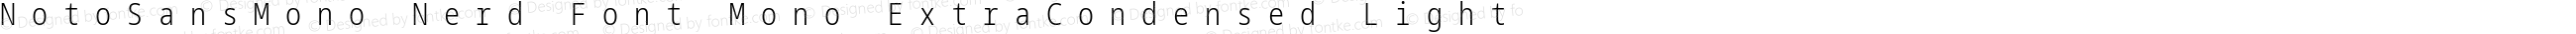 Noto Sans Mono ExtraCondensed Light Nerd Font Complete Mono